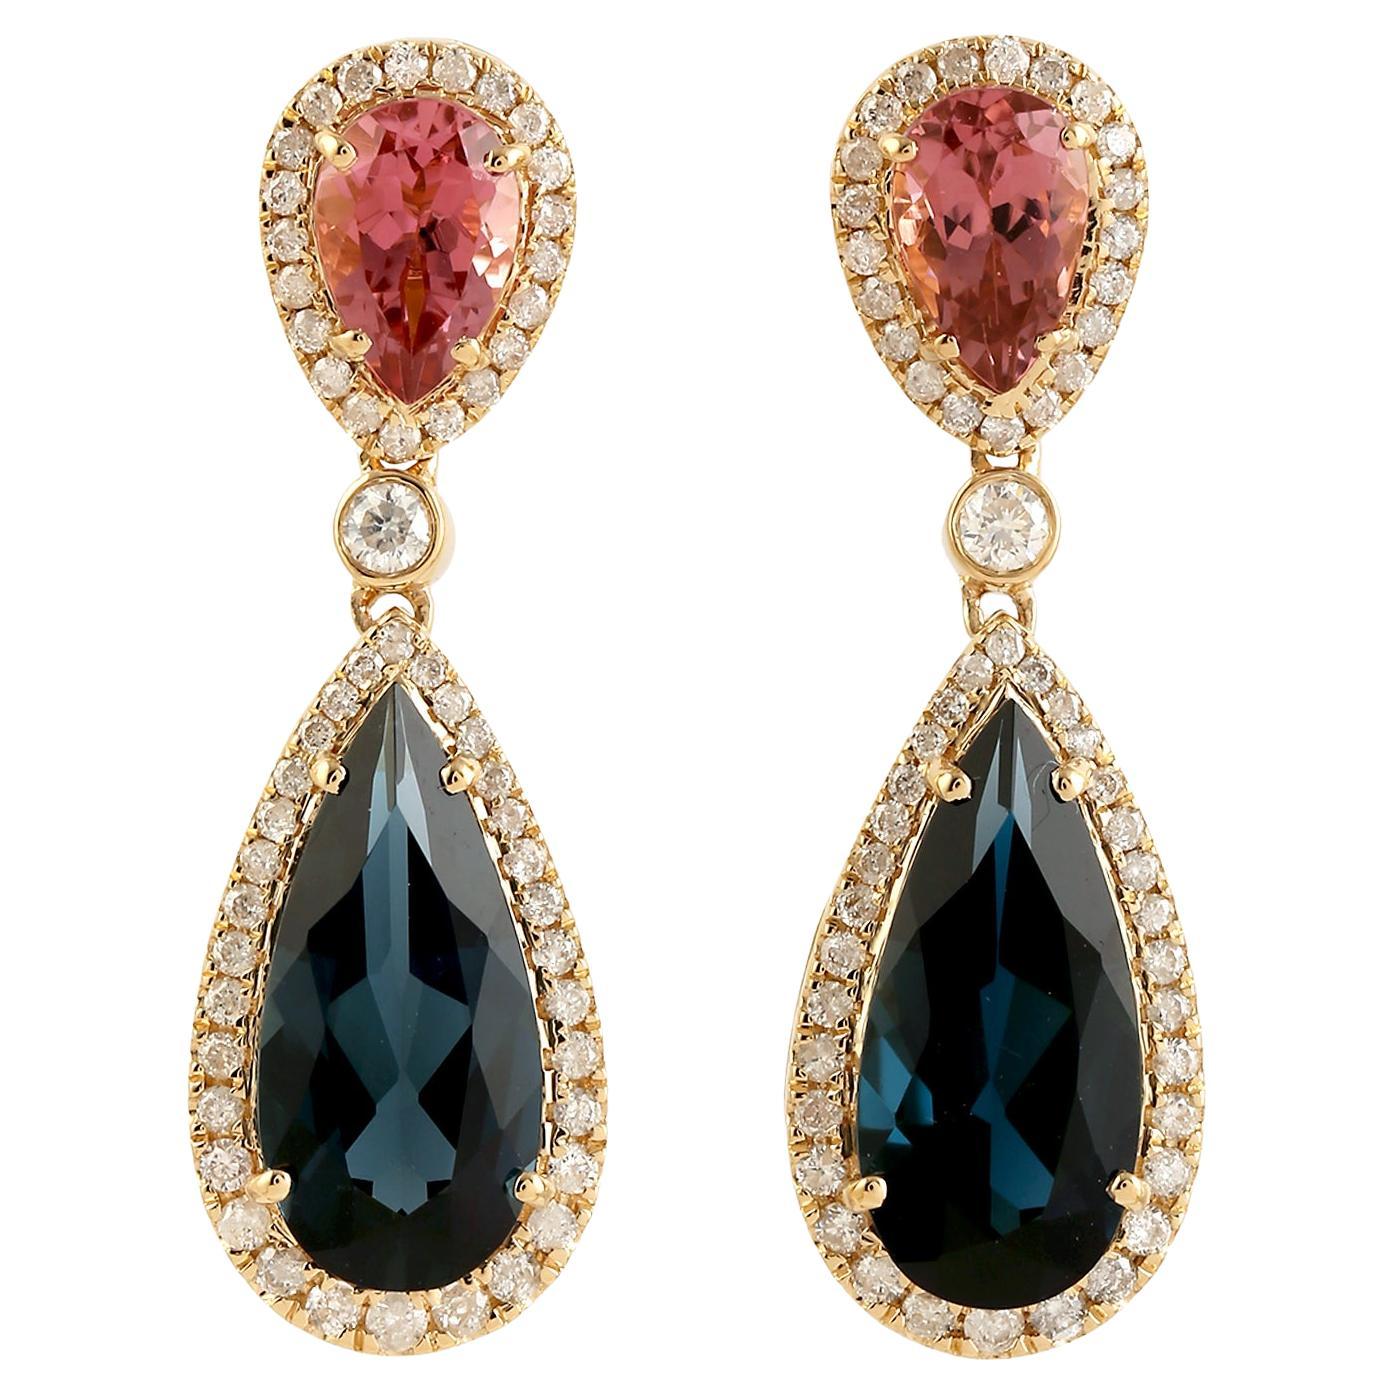 Pear Shaped Blue Topaz & Pink Tourmaline Dangle Earrings With Diamonds